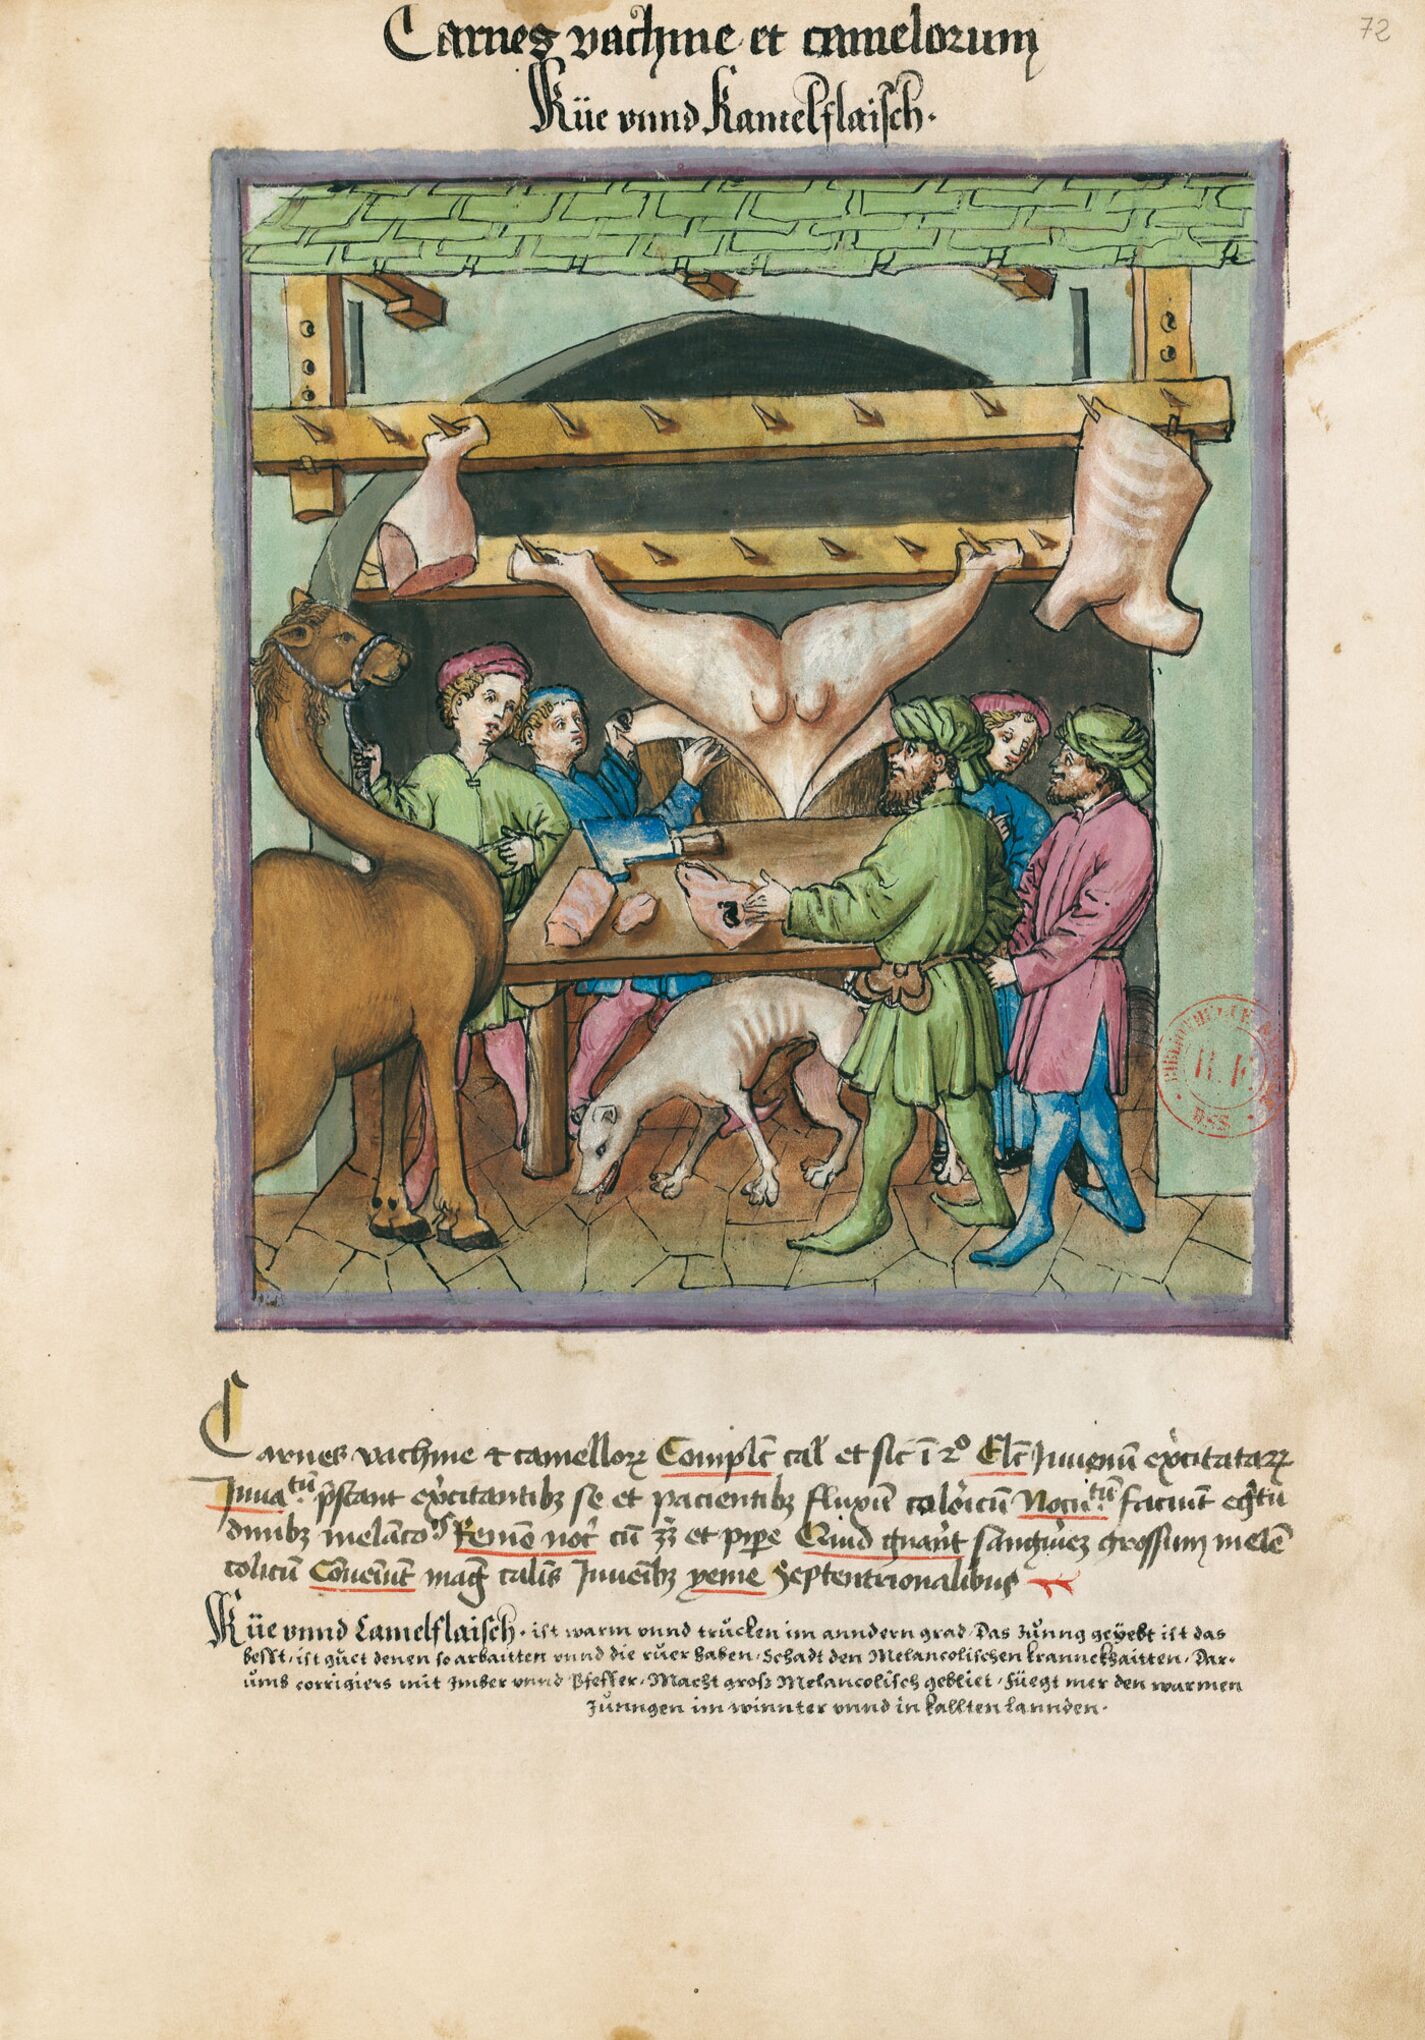 f. 72r, Carne de vaca y de camello